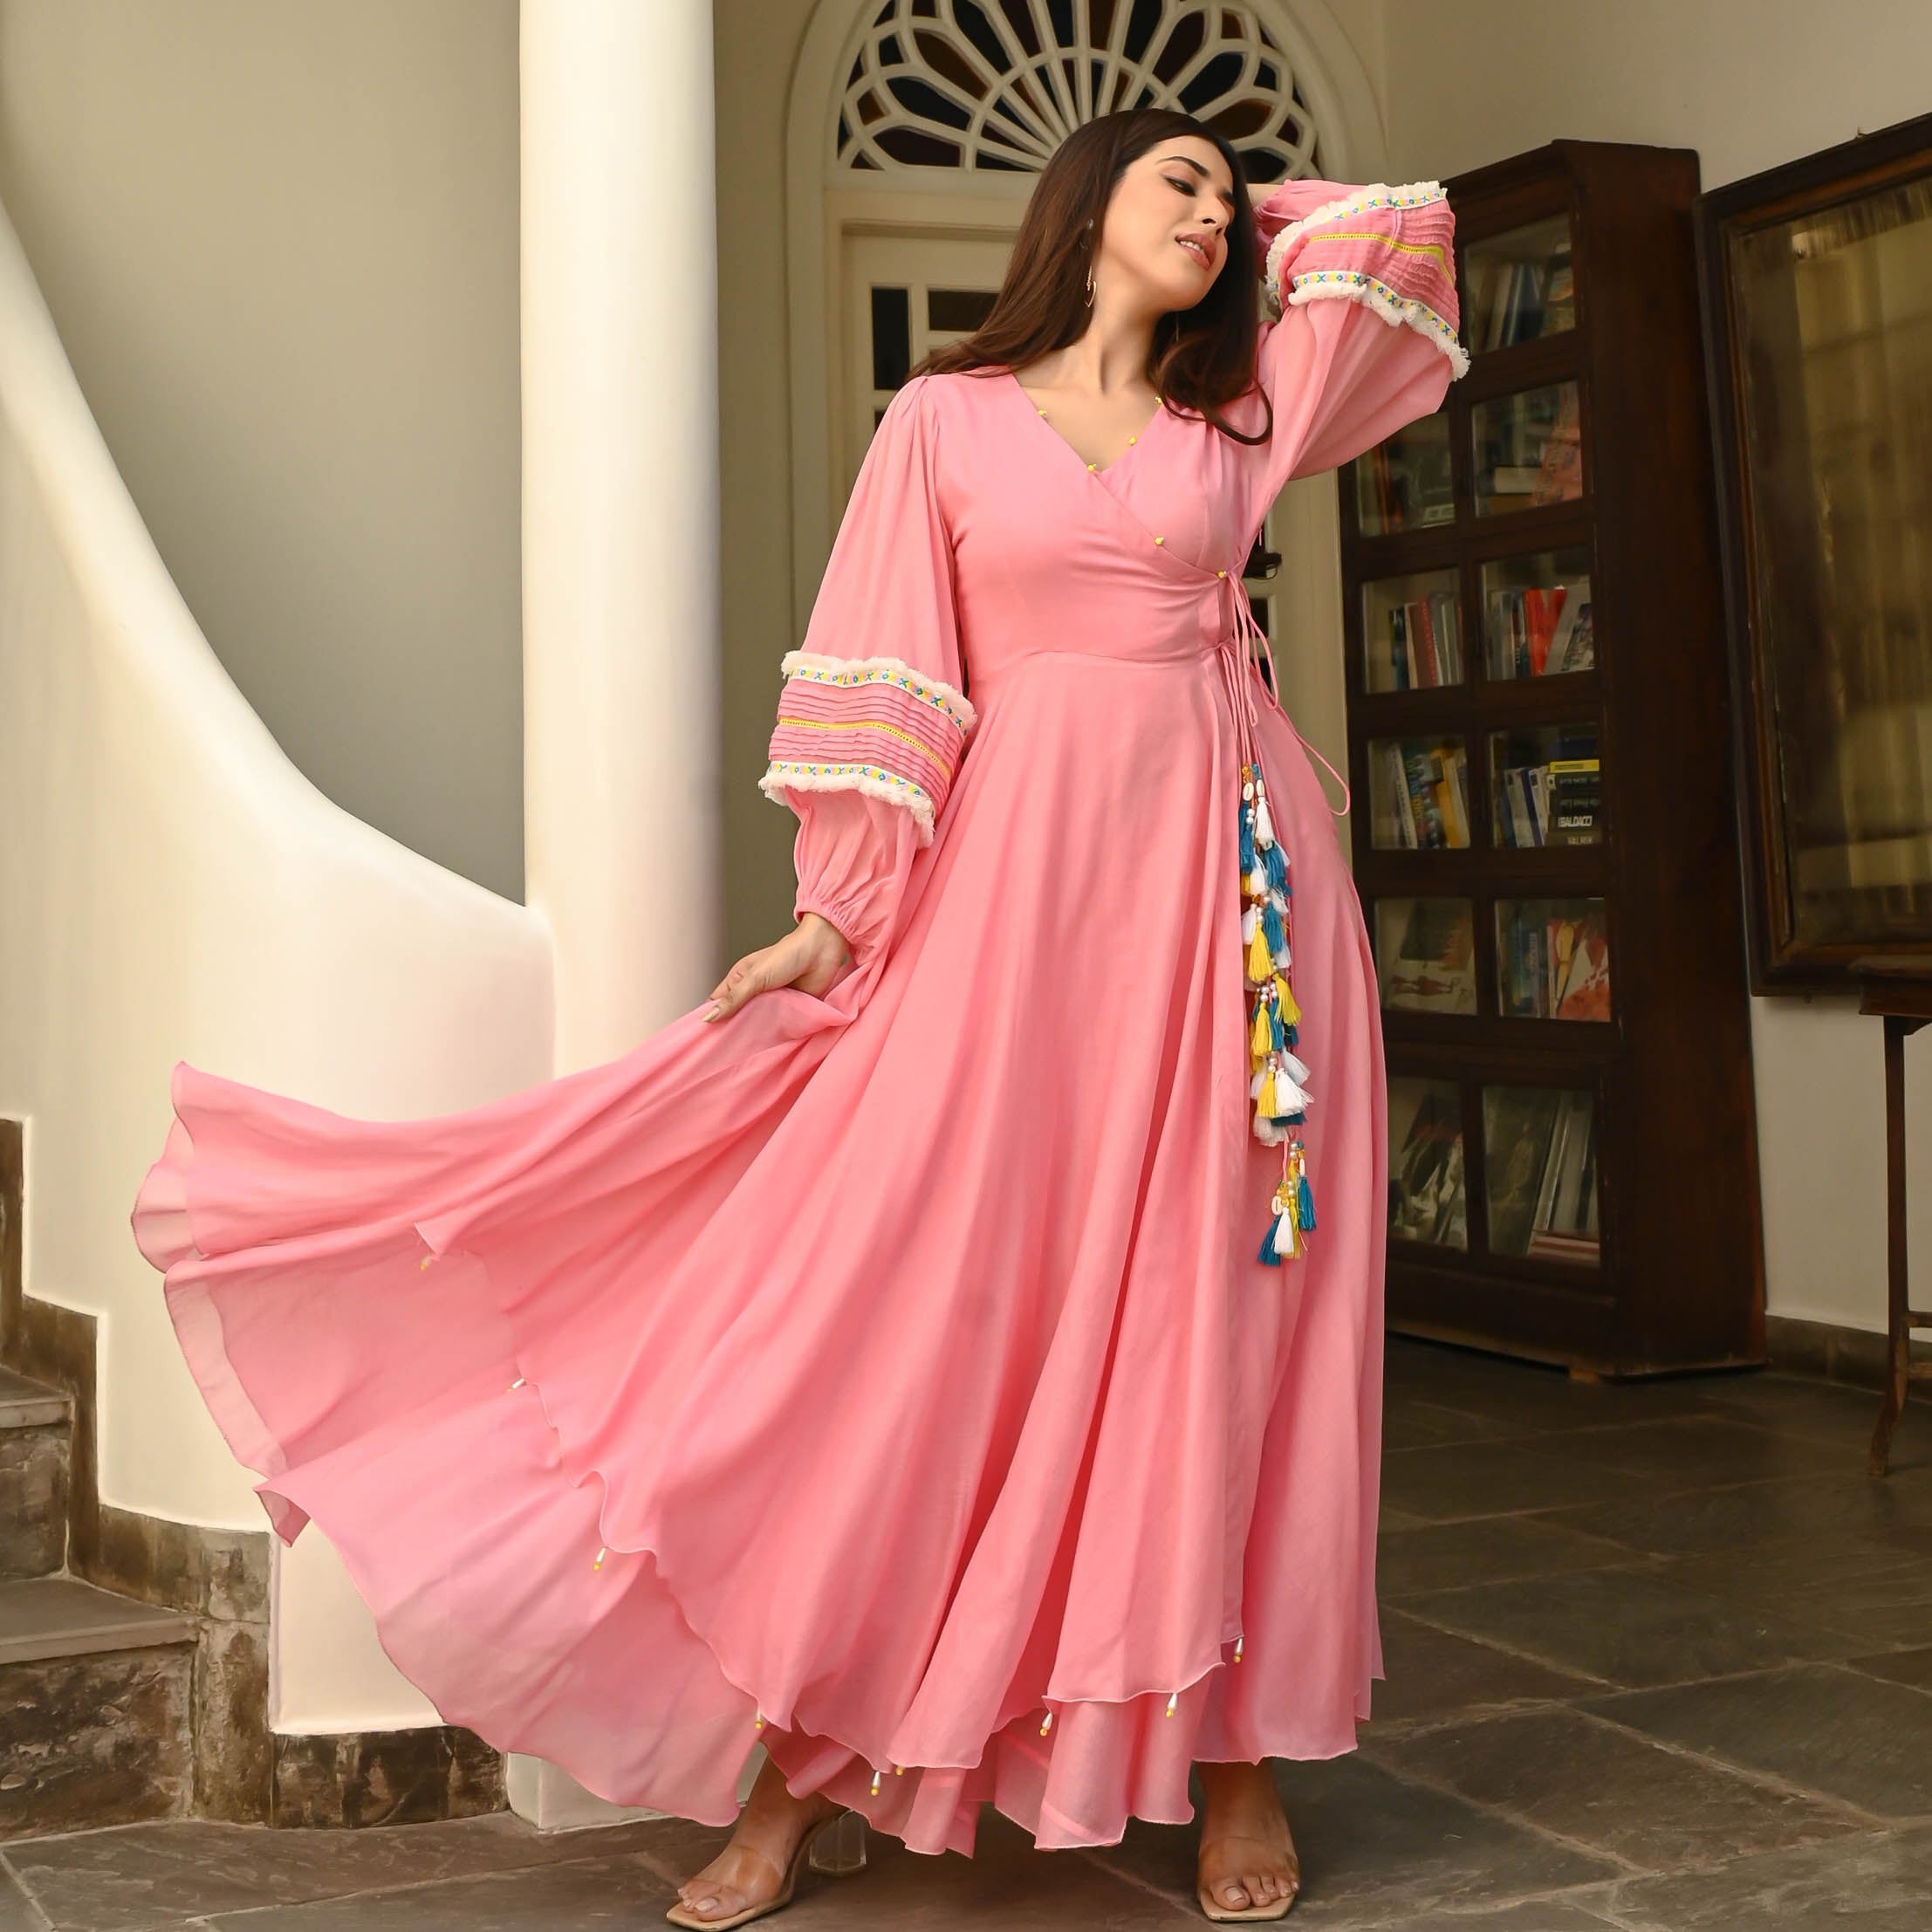 Calm Pink Tassels Cotton Dress For Women Online